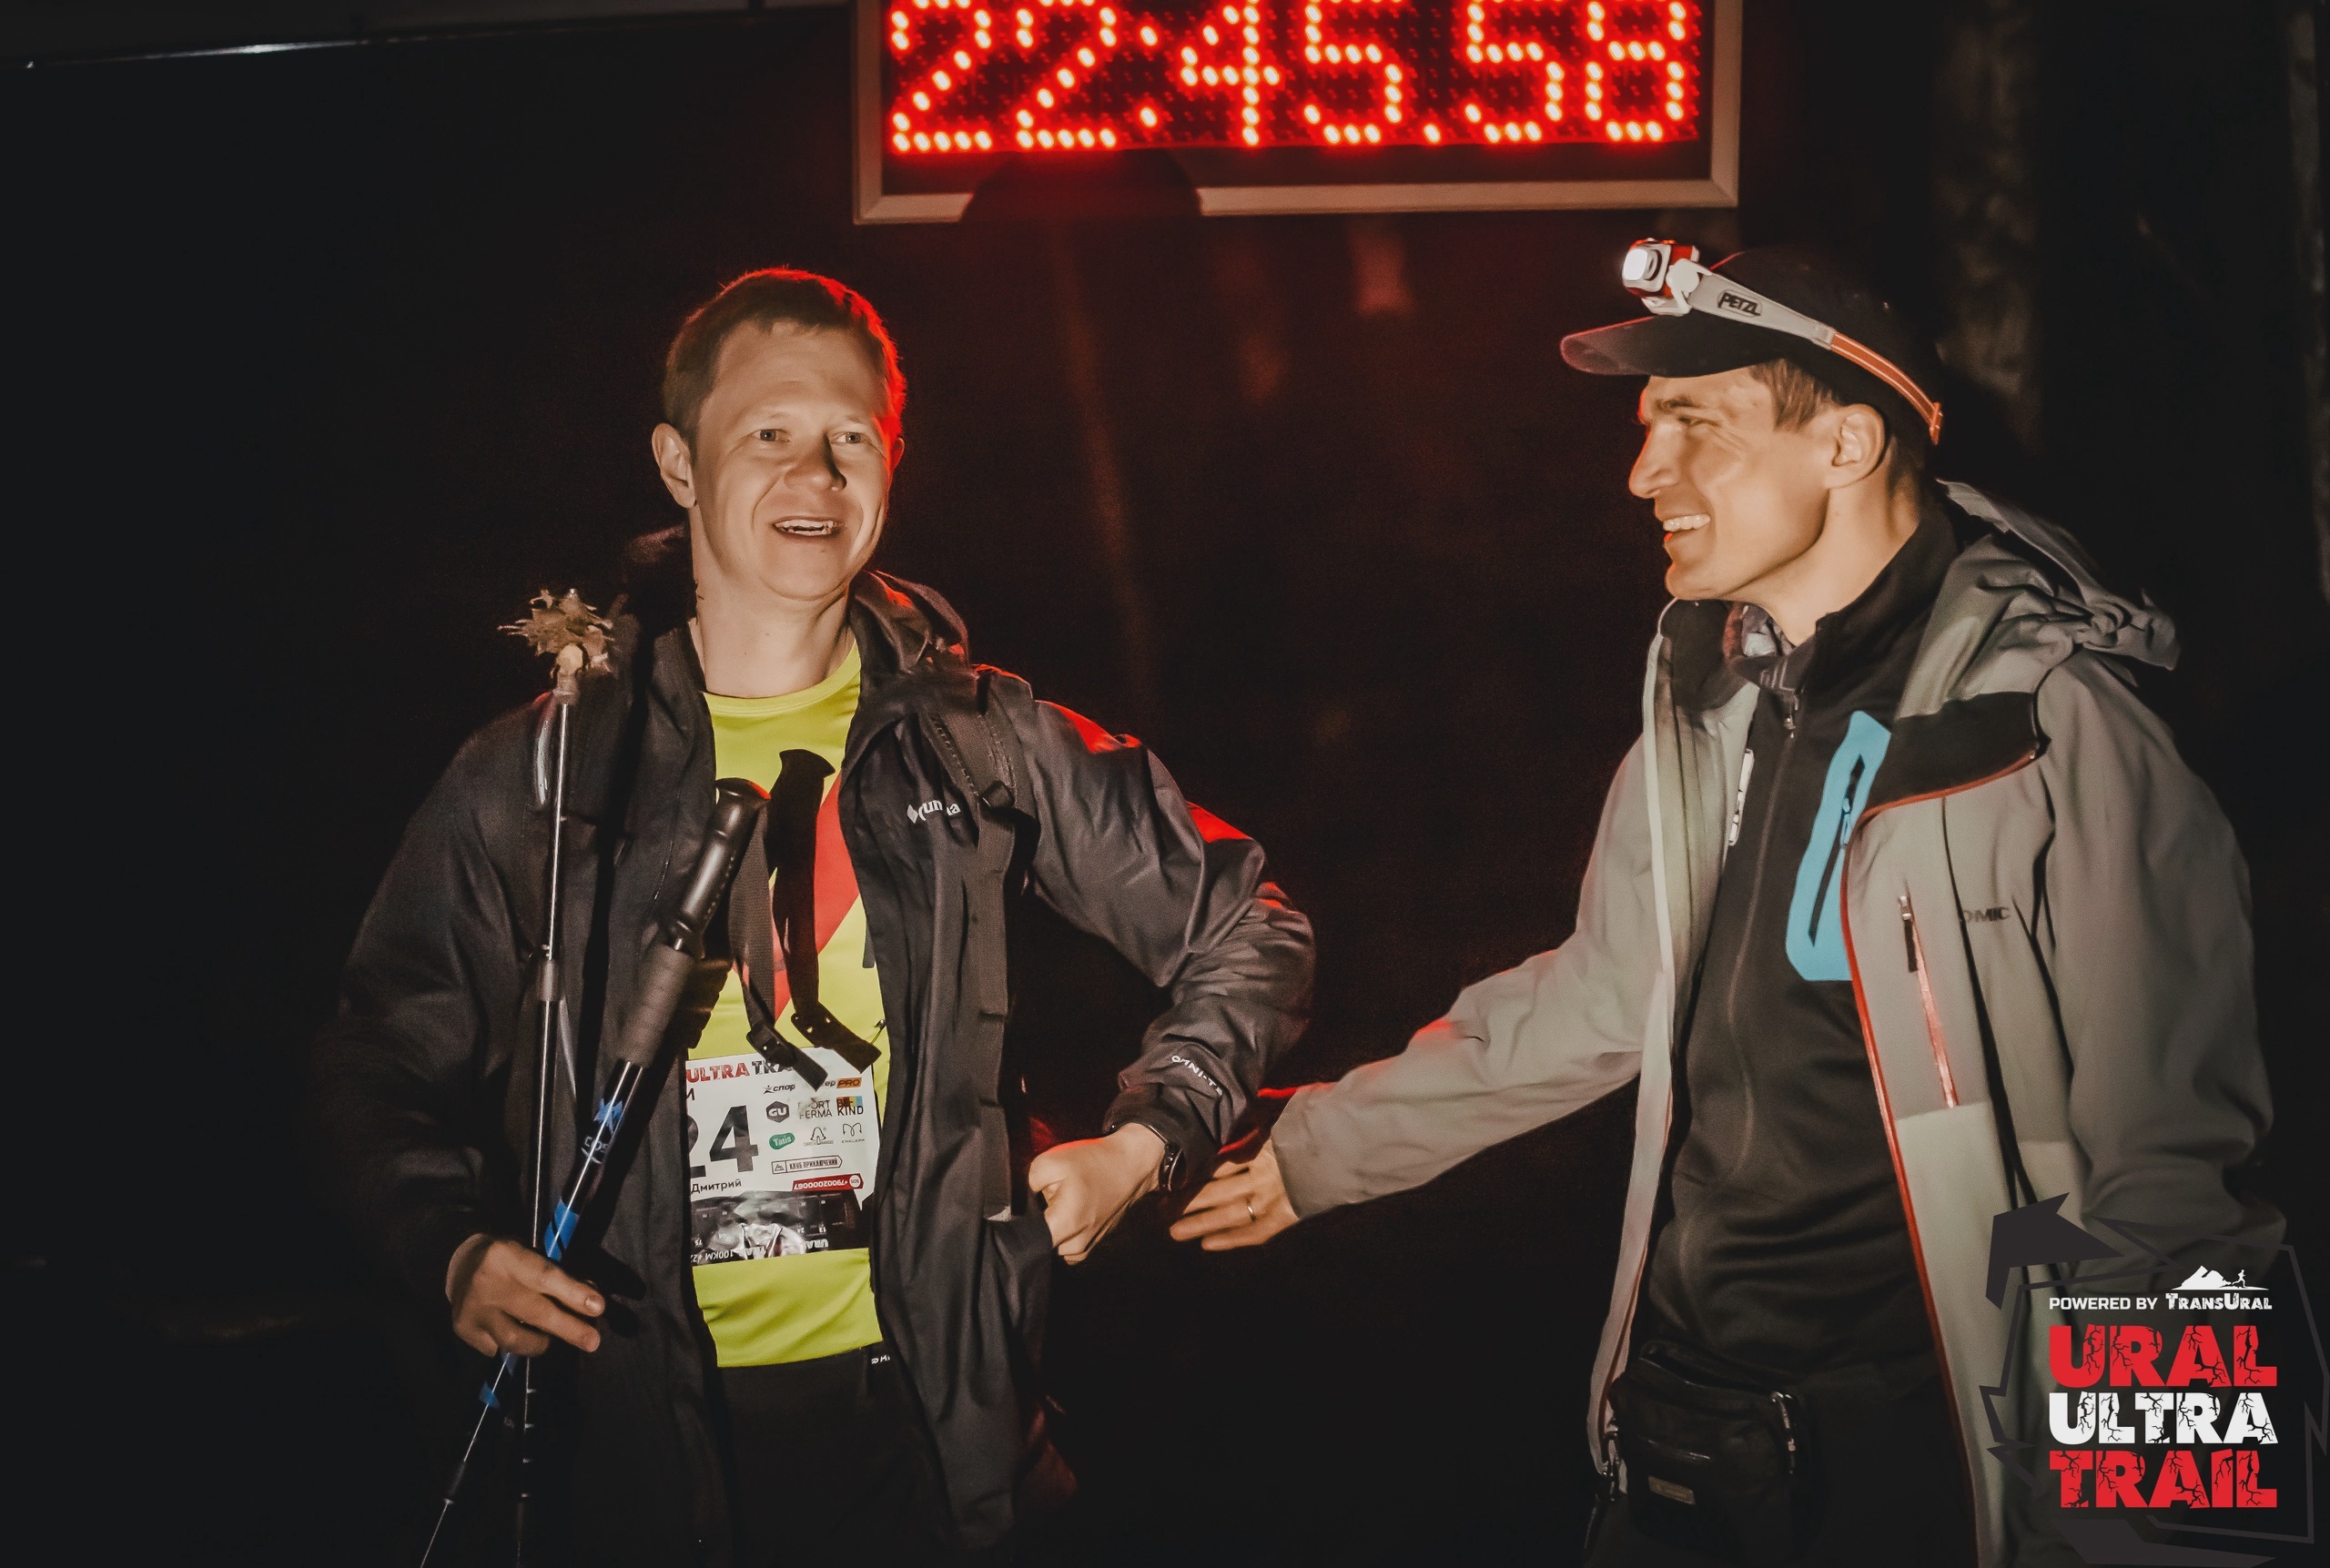 На финише Дмитрия встретил один из организаторов и идейных вдохновителей ультратрейла Антон Жиганов